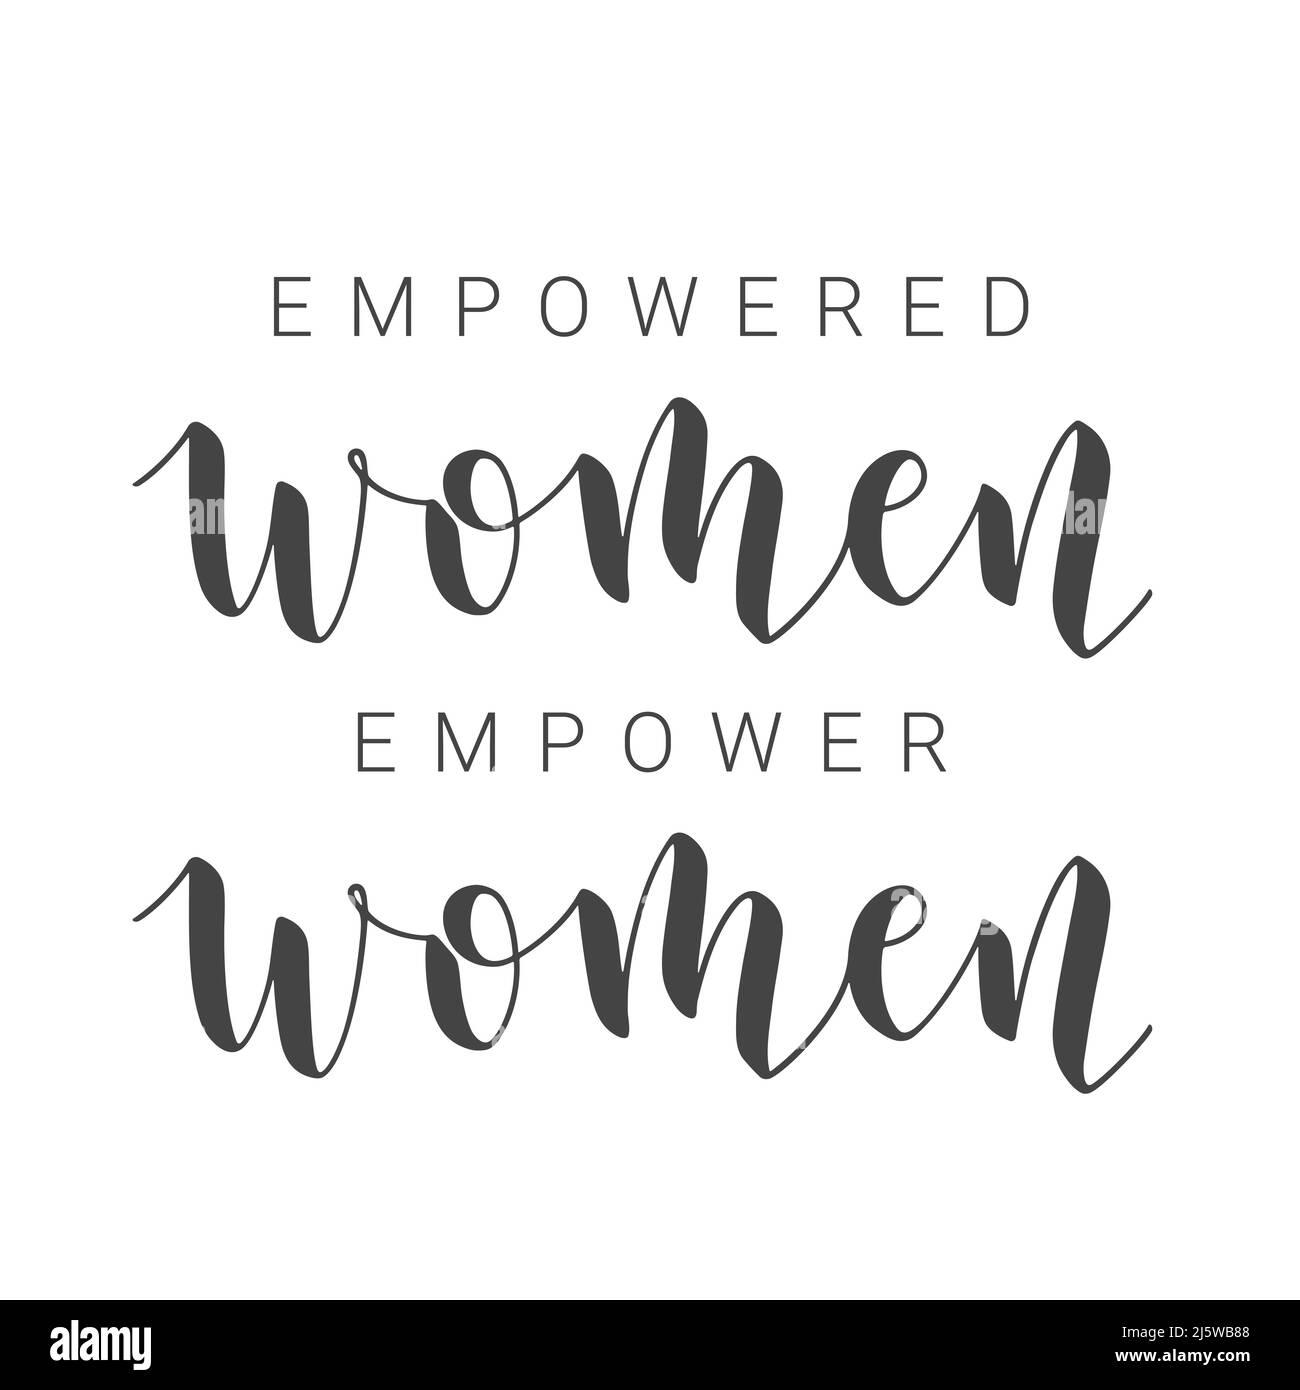 Handschriftliche Schriftzüge von Empowered Women Empower Women. Vorlage für Karte, Etikett, Postkarte, Poster, Aufkleber, Print- oder Web-Produkt. Stock Vektor